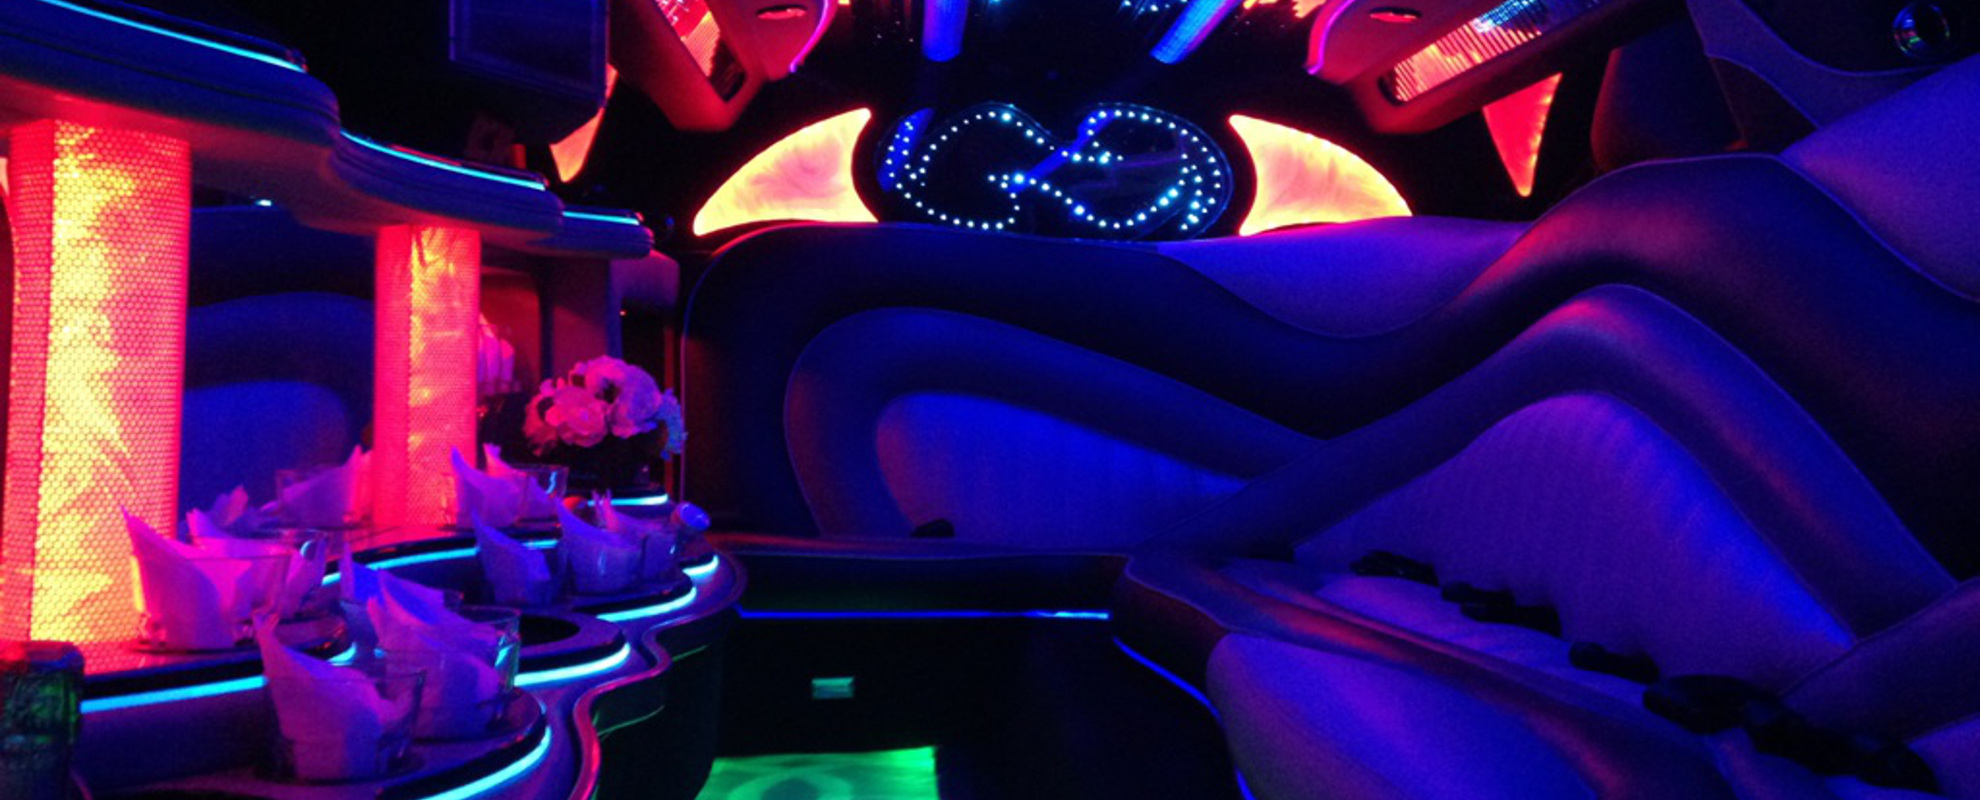 Melbourne Limousine car hire showing Neon lighting